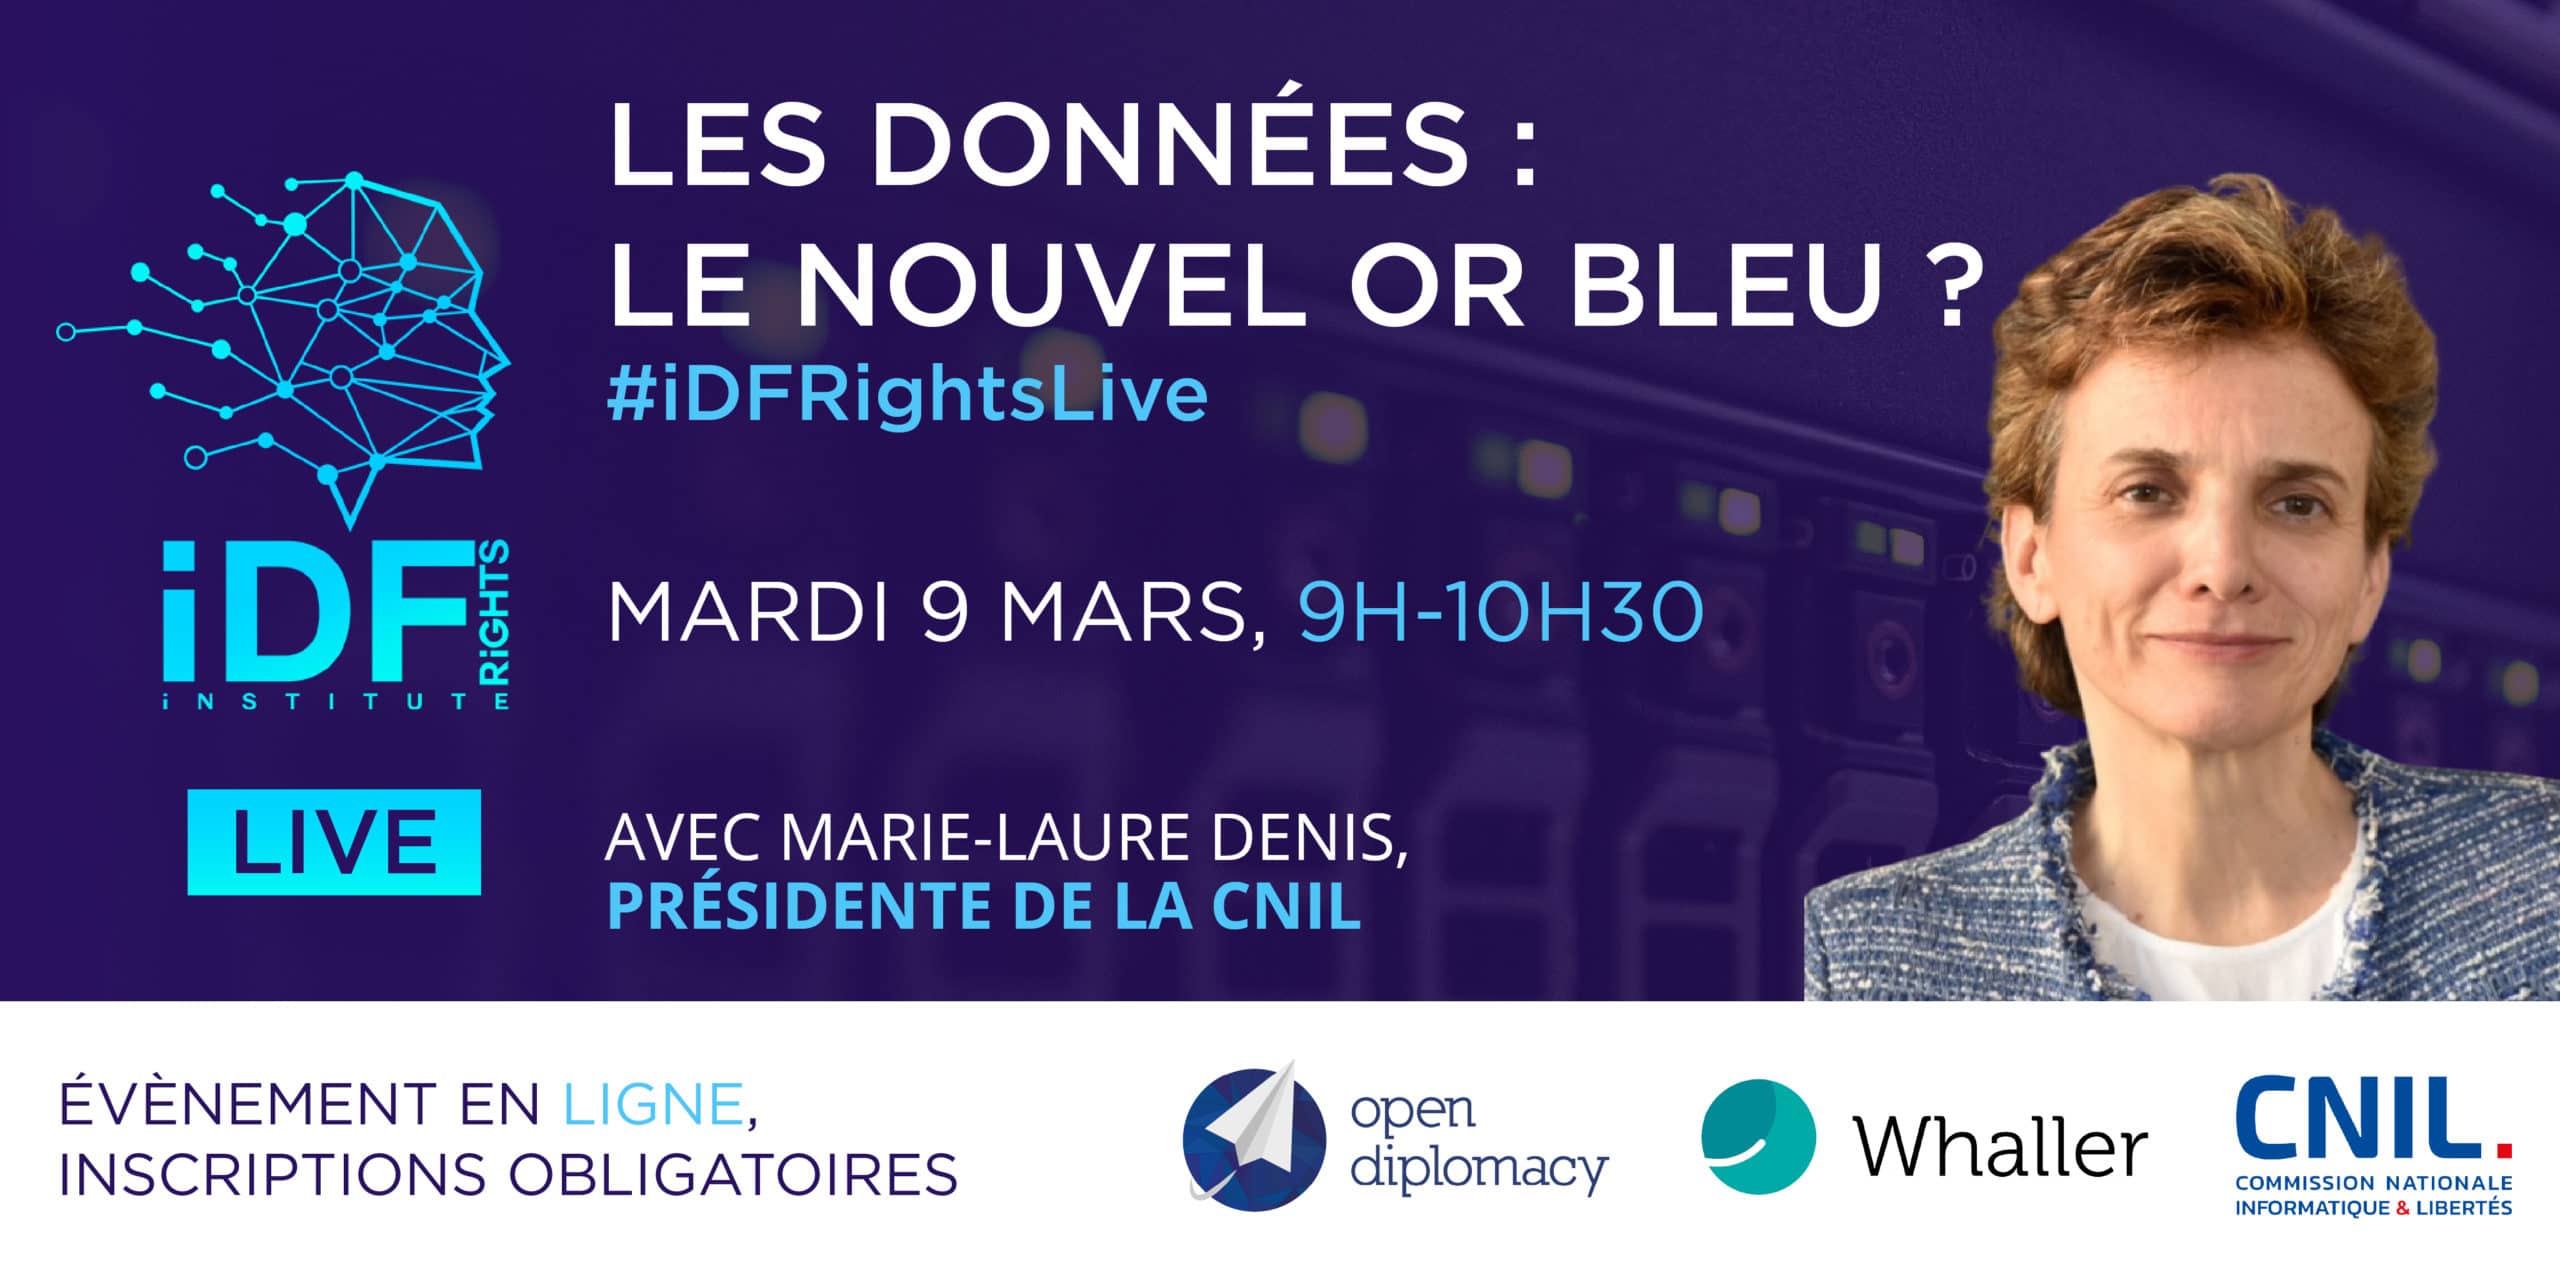 Les données : le nouvel or bleu ? #iDFRightsLive mardi 9 mars – 9h-10h30